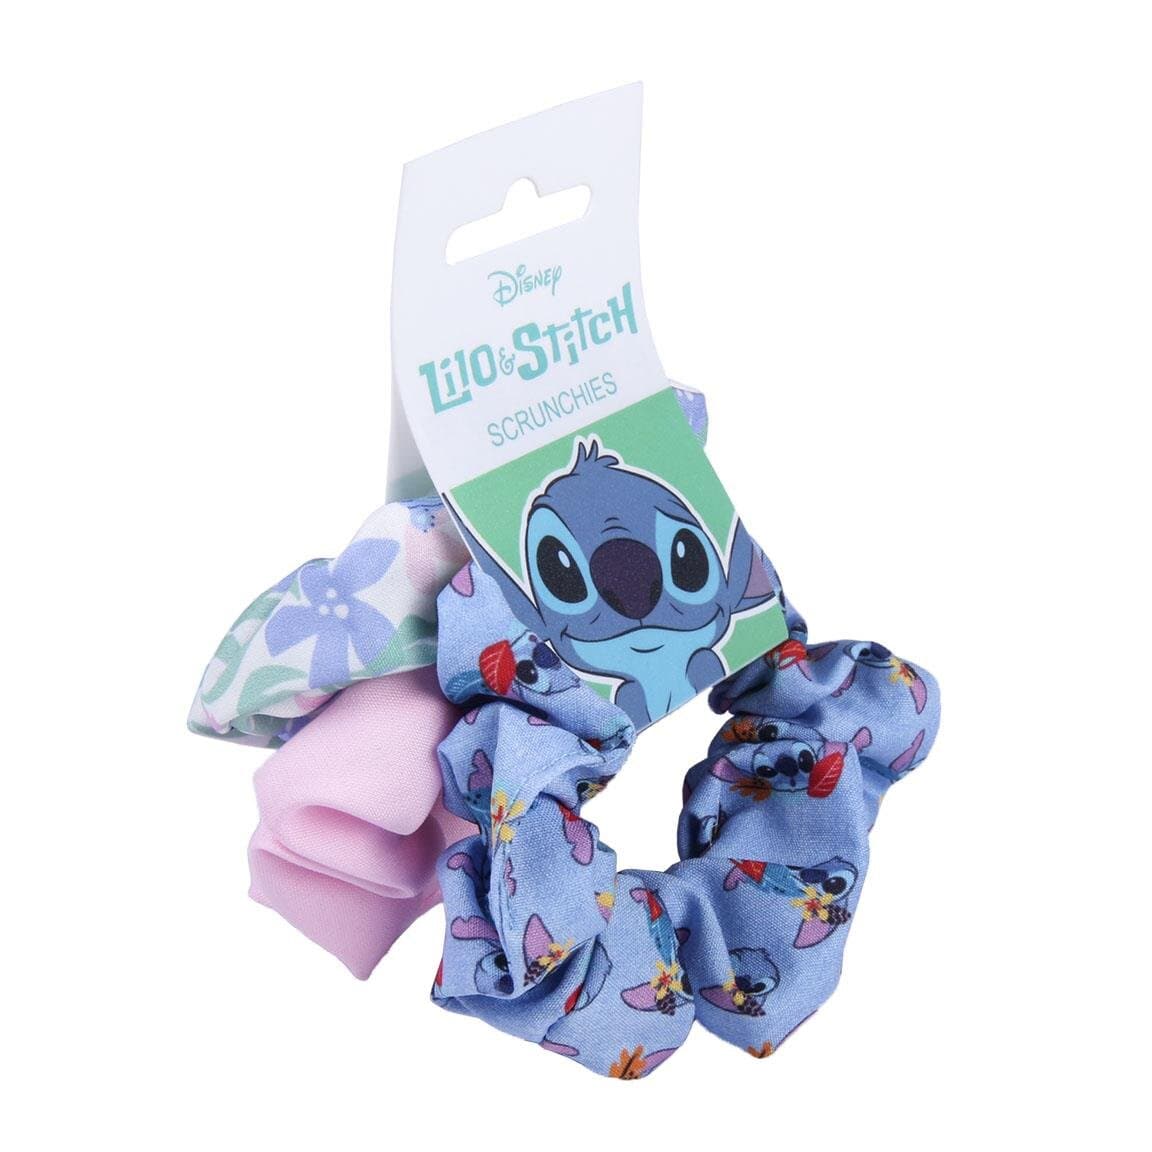 Lilo & Stitch - Scrunchies 3 stk.